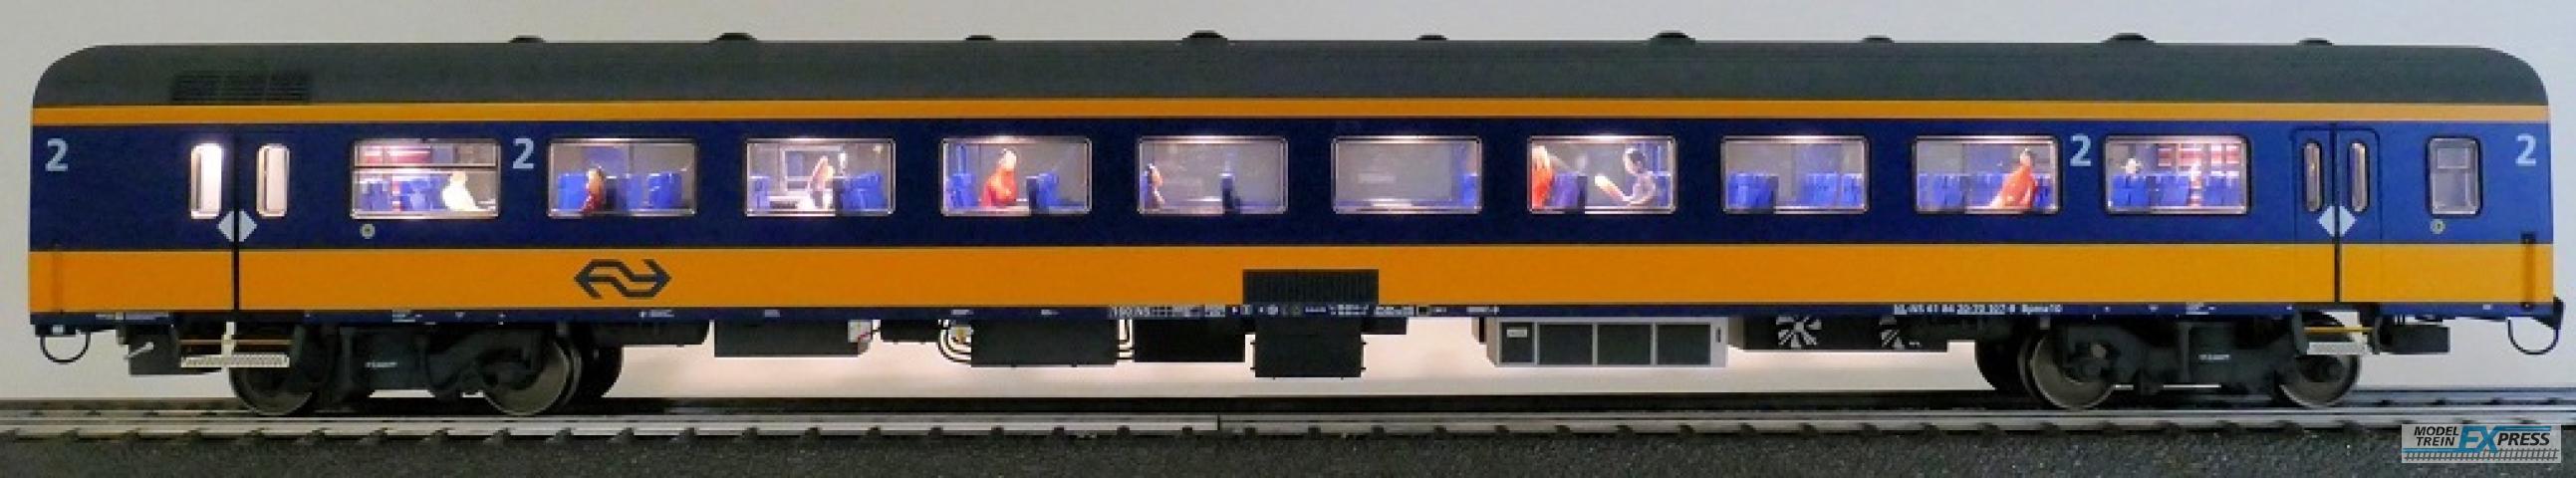 Exact-train 11152 NS ICRm Amsterdam - Breda für den Inlandseinsatz Reisezugwagen Bpmz10 ( Farbe Gelb / Blau) mit Beleuchtung und Figuren, Ep. VI